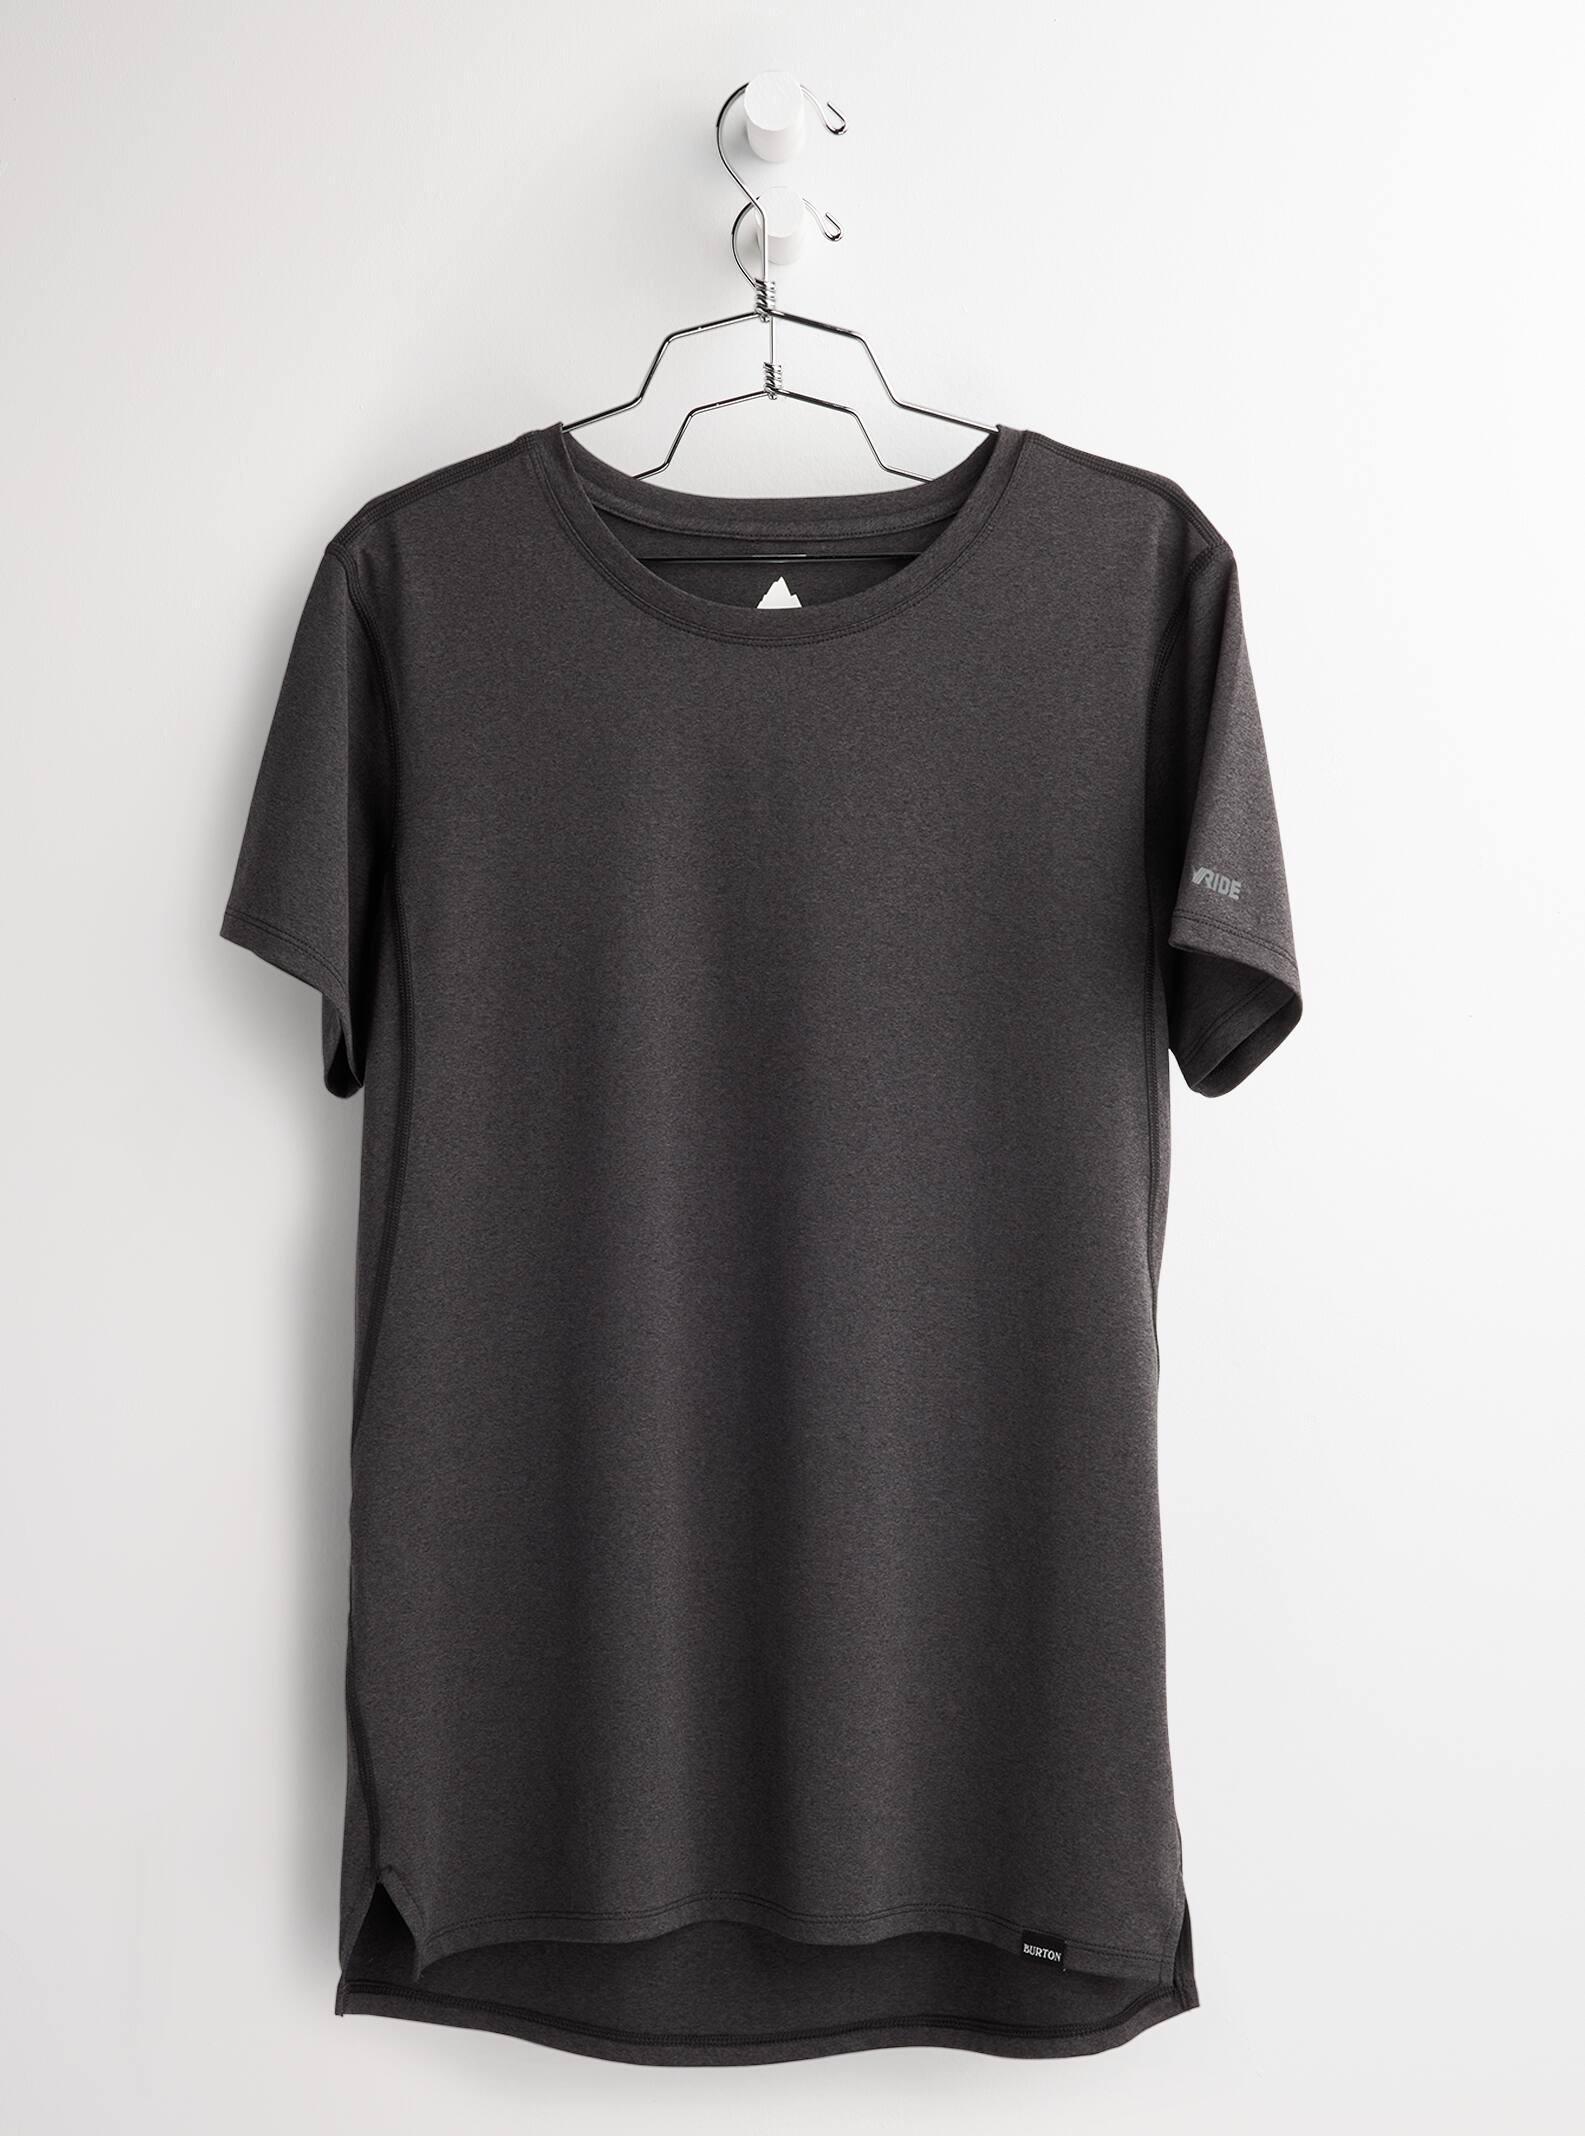 Burton Women's Multipath Essential Tech Short Sleeve T-Shirt, S